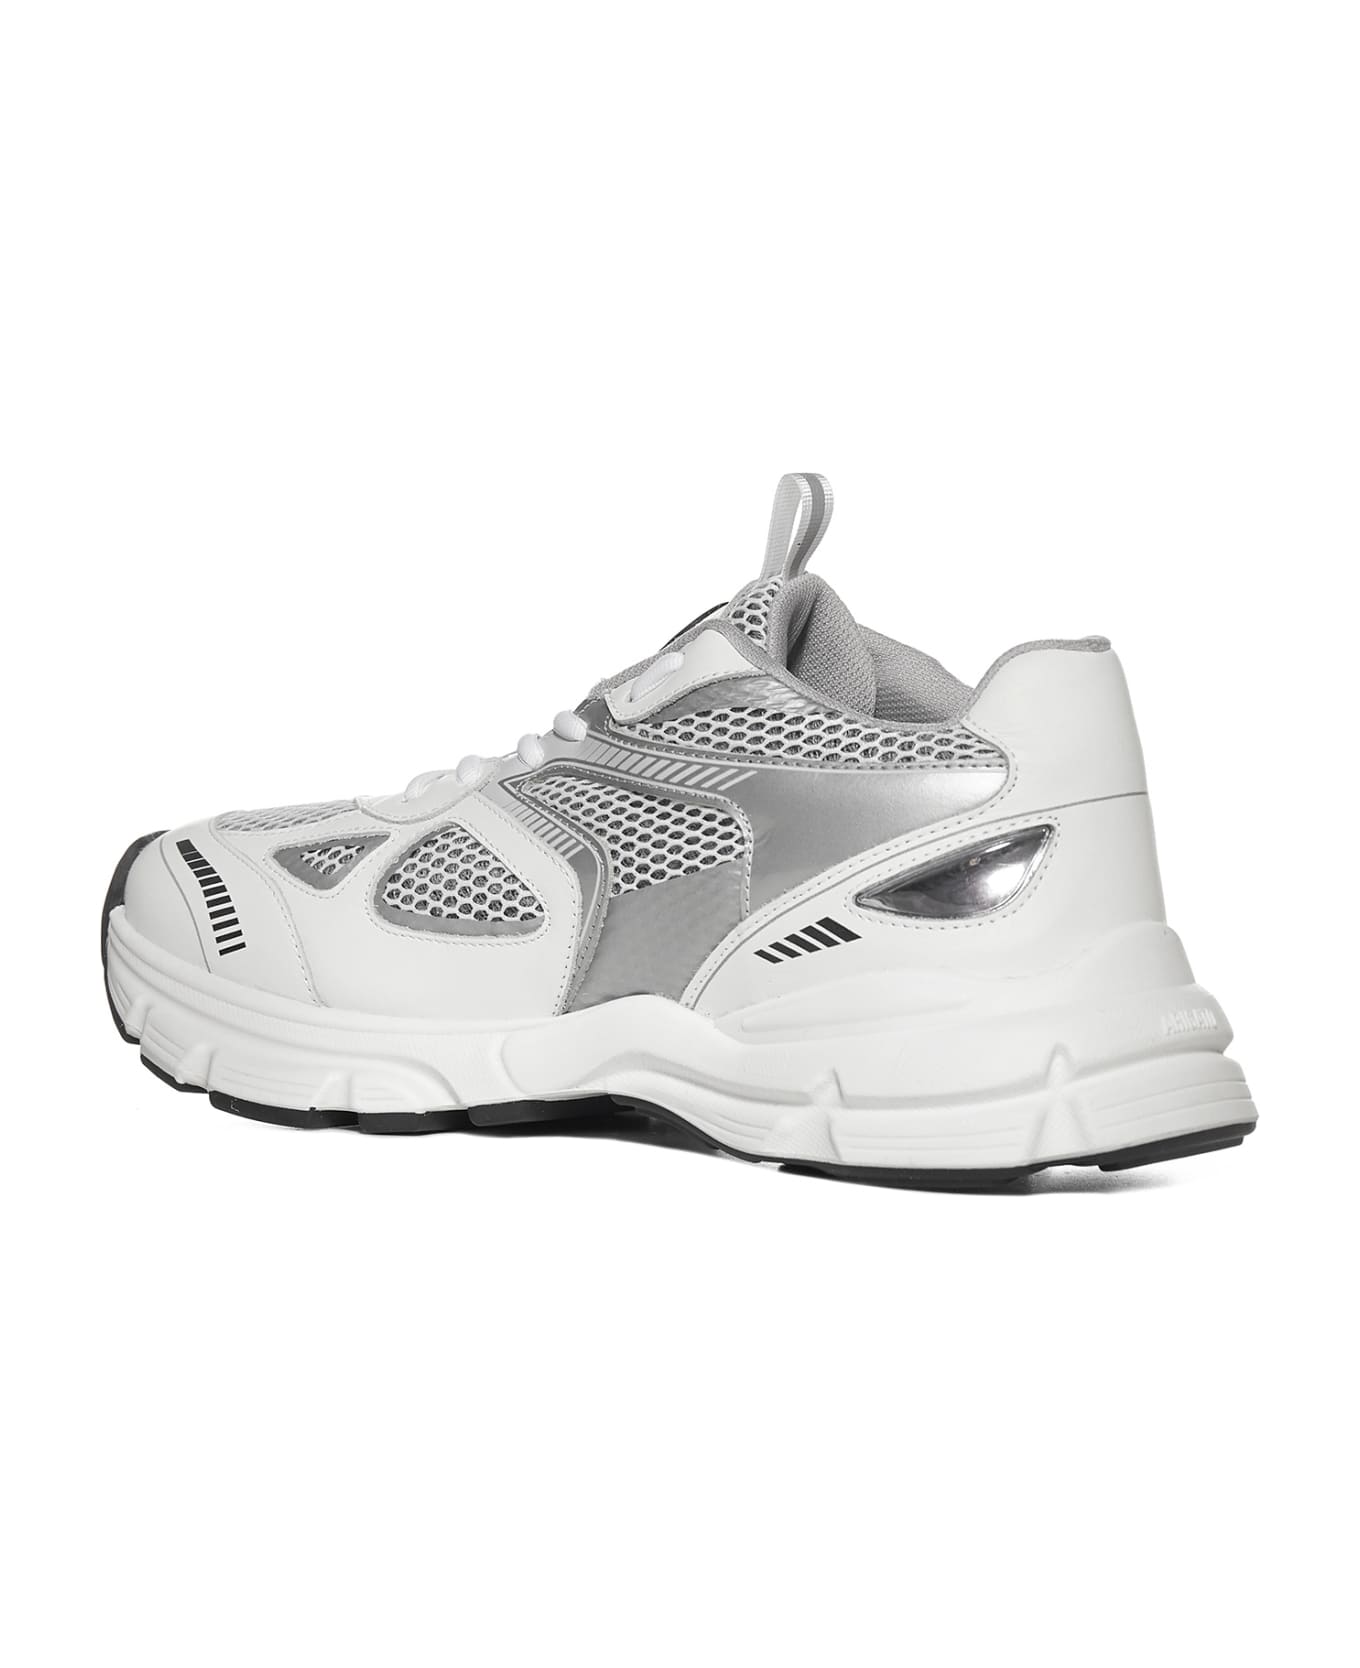 Axel Arigato Sneakers - White silver